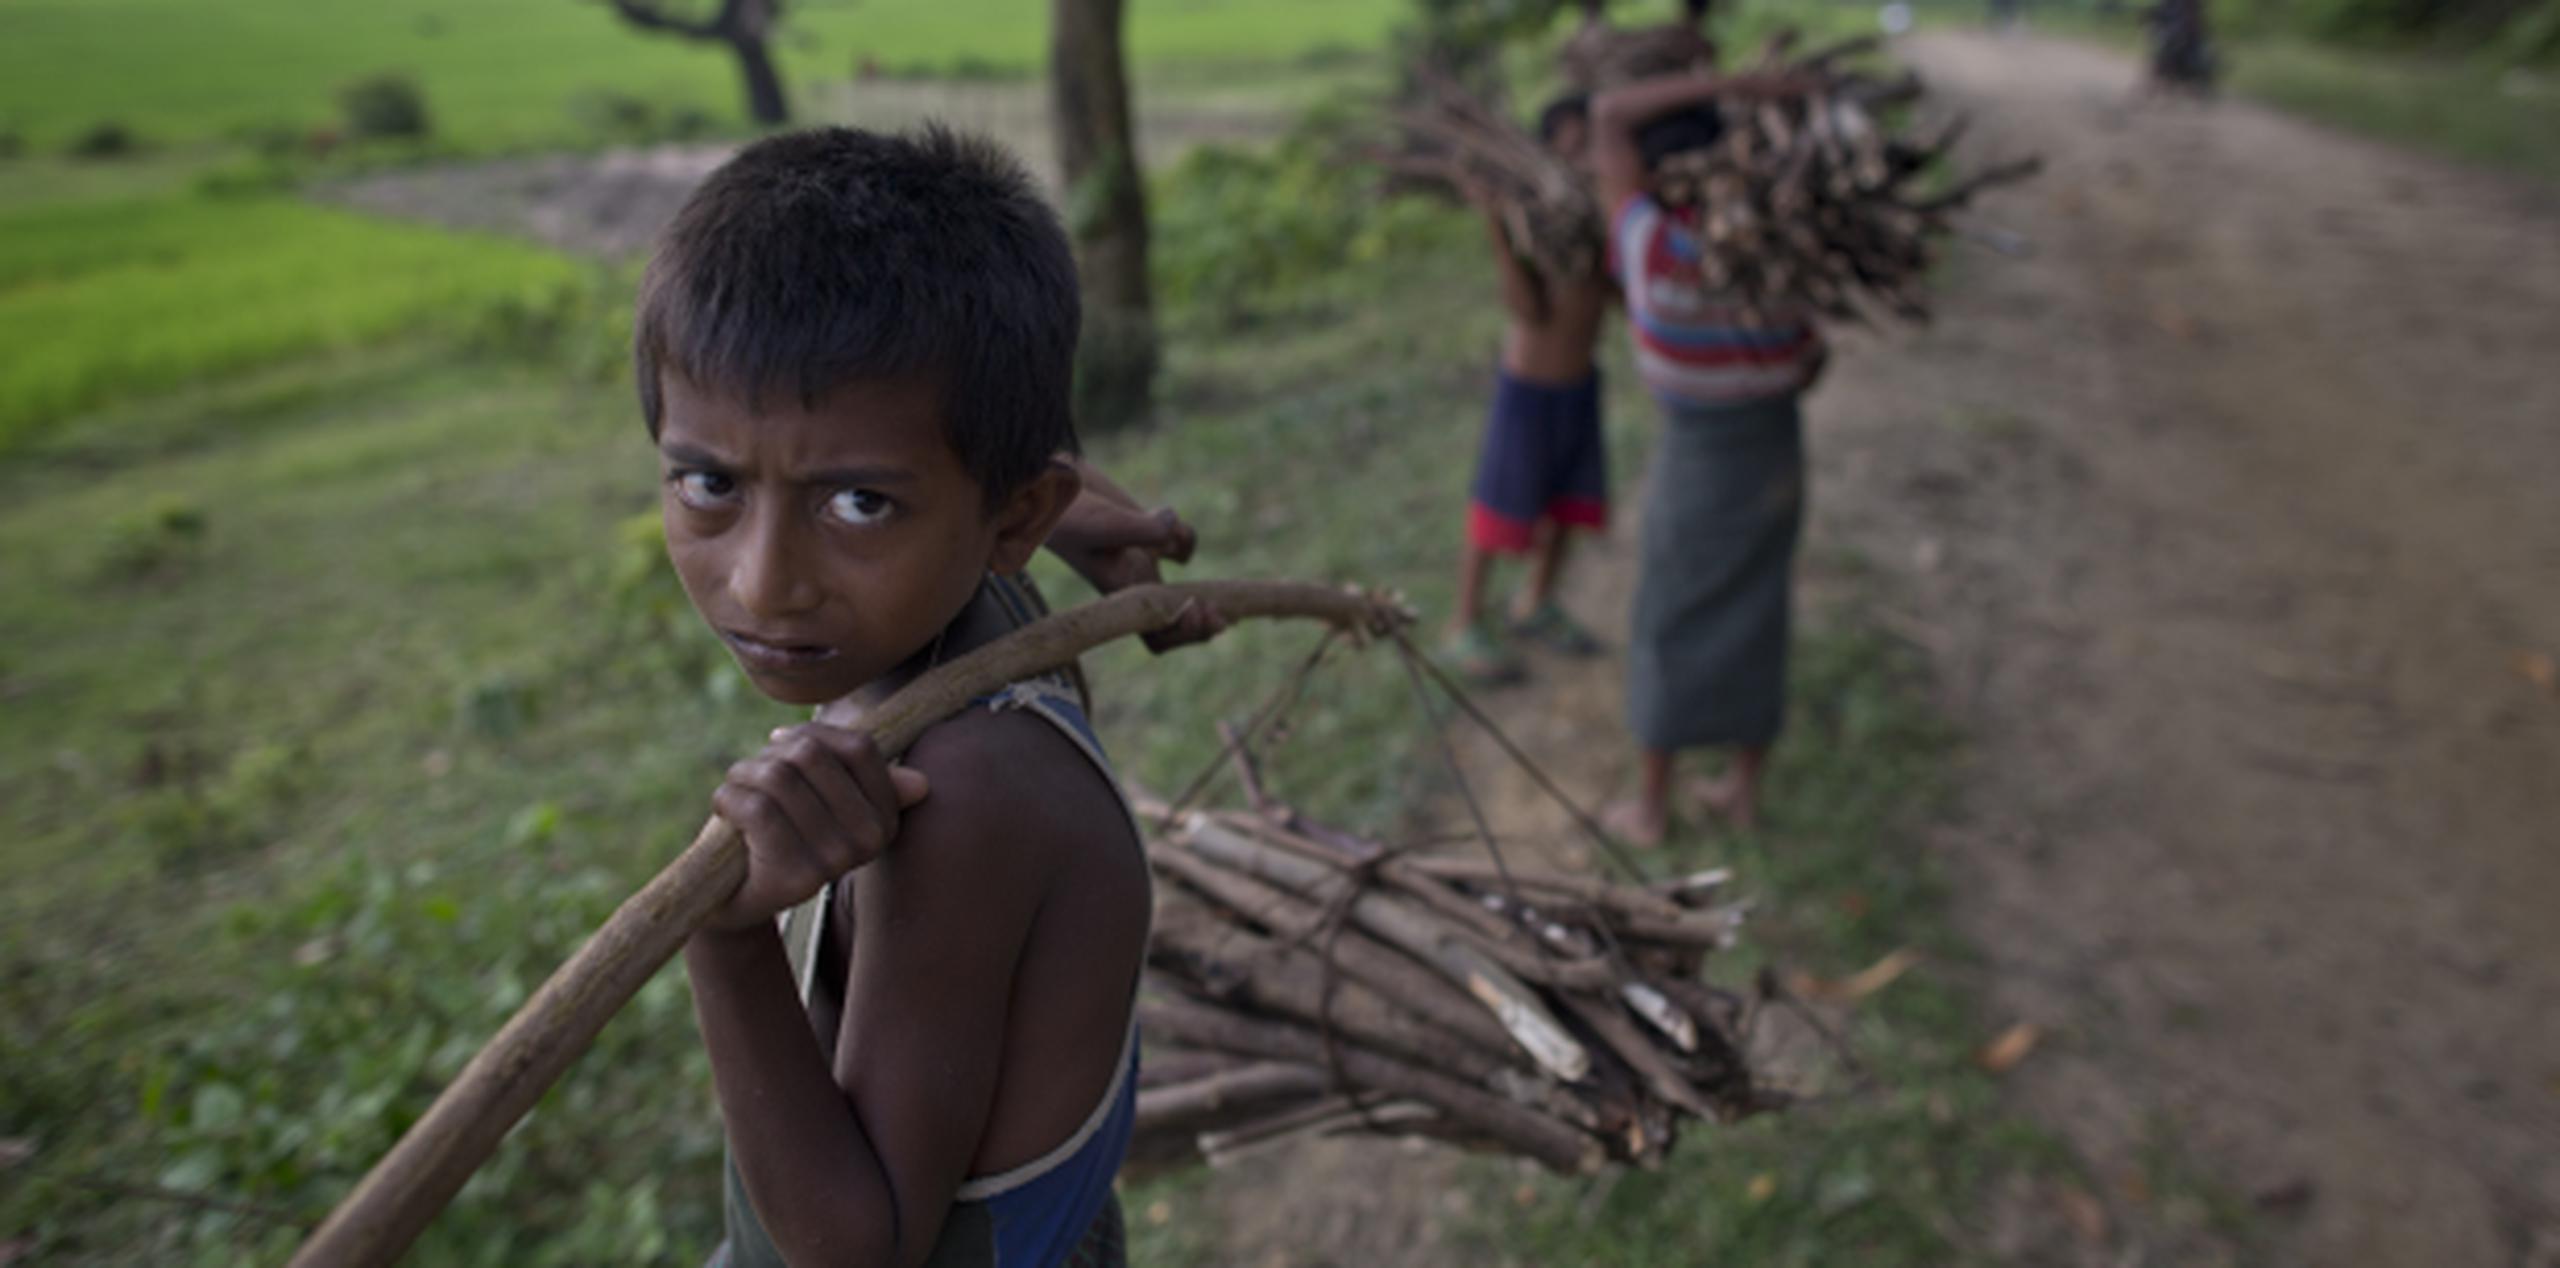 A los niños de la secta musulmana los rohingya, no les quedan muchas opciones aparte de trabajar como obreros, recibiendo el equivalente de un dólar por día. (AP/Gemunu Amarasinghe/Archivo)